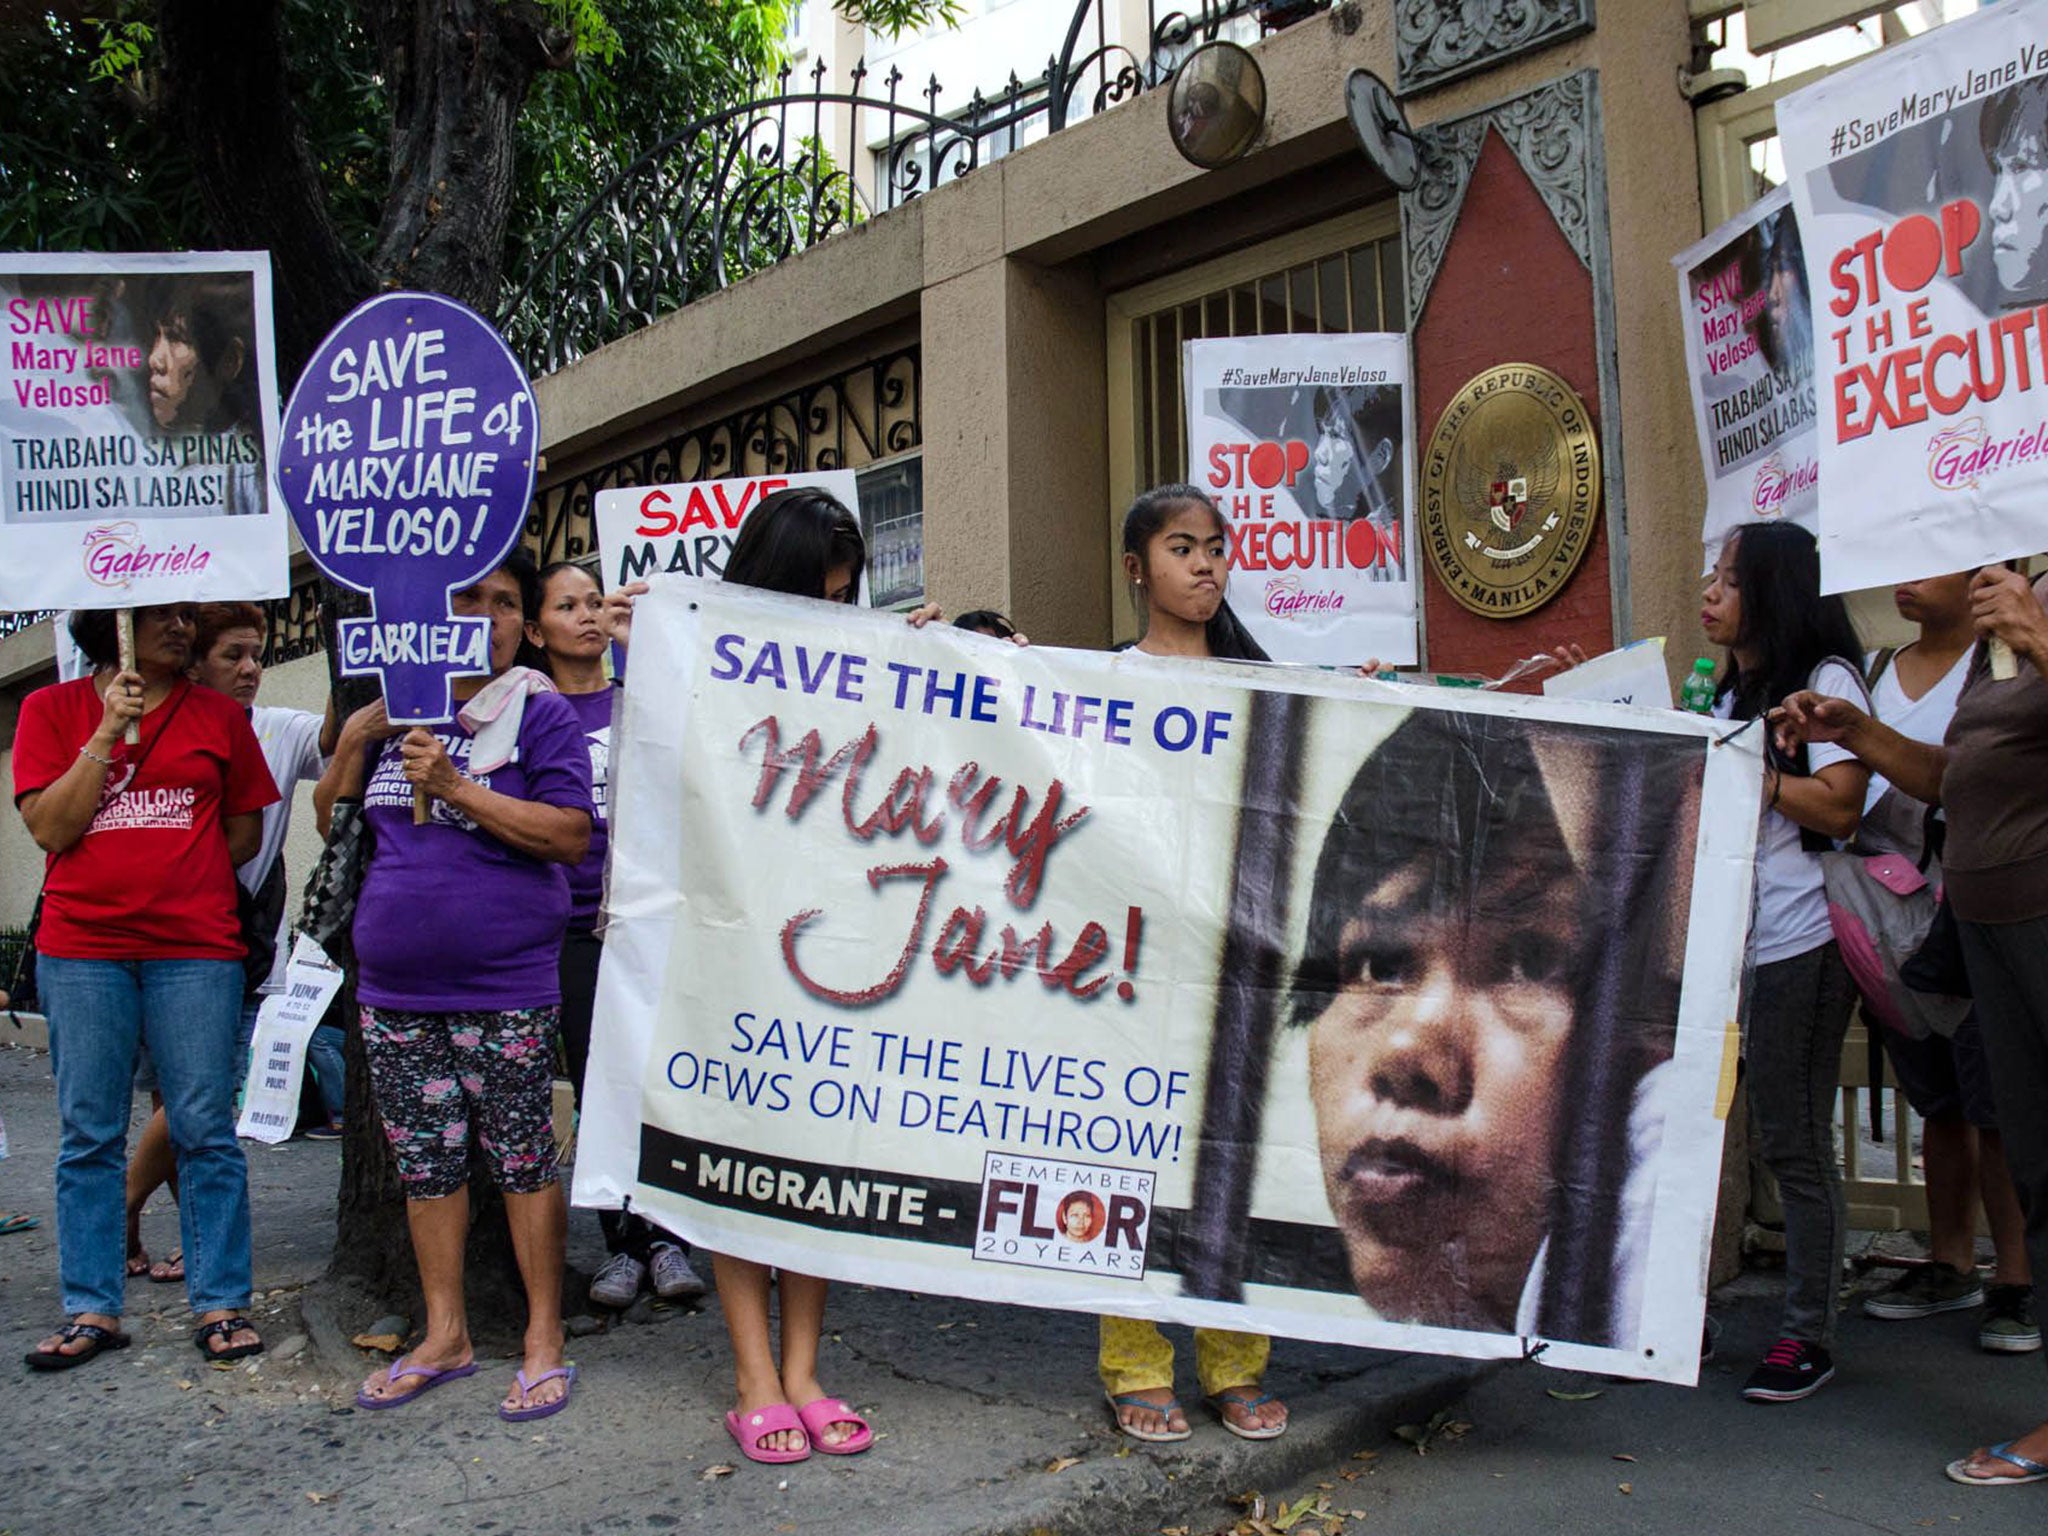 Migrante International stages a prayer vigil rally to save Mary Jane Veloso